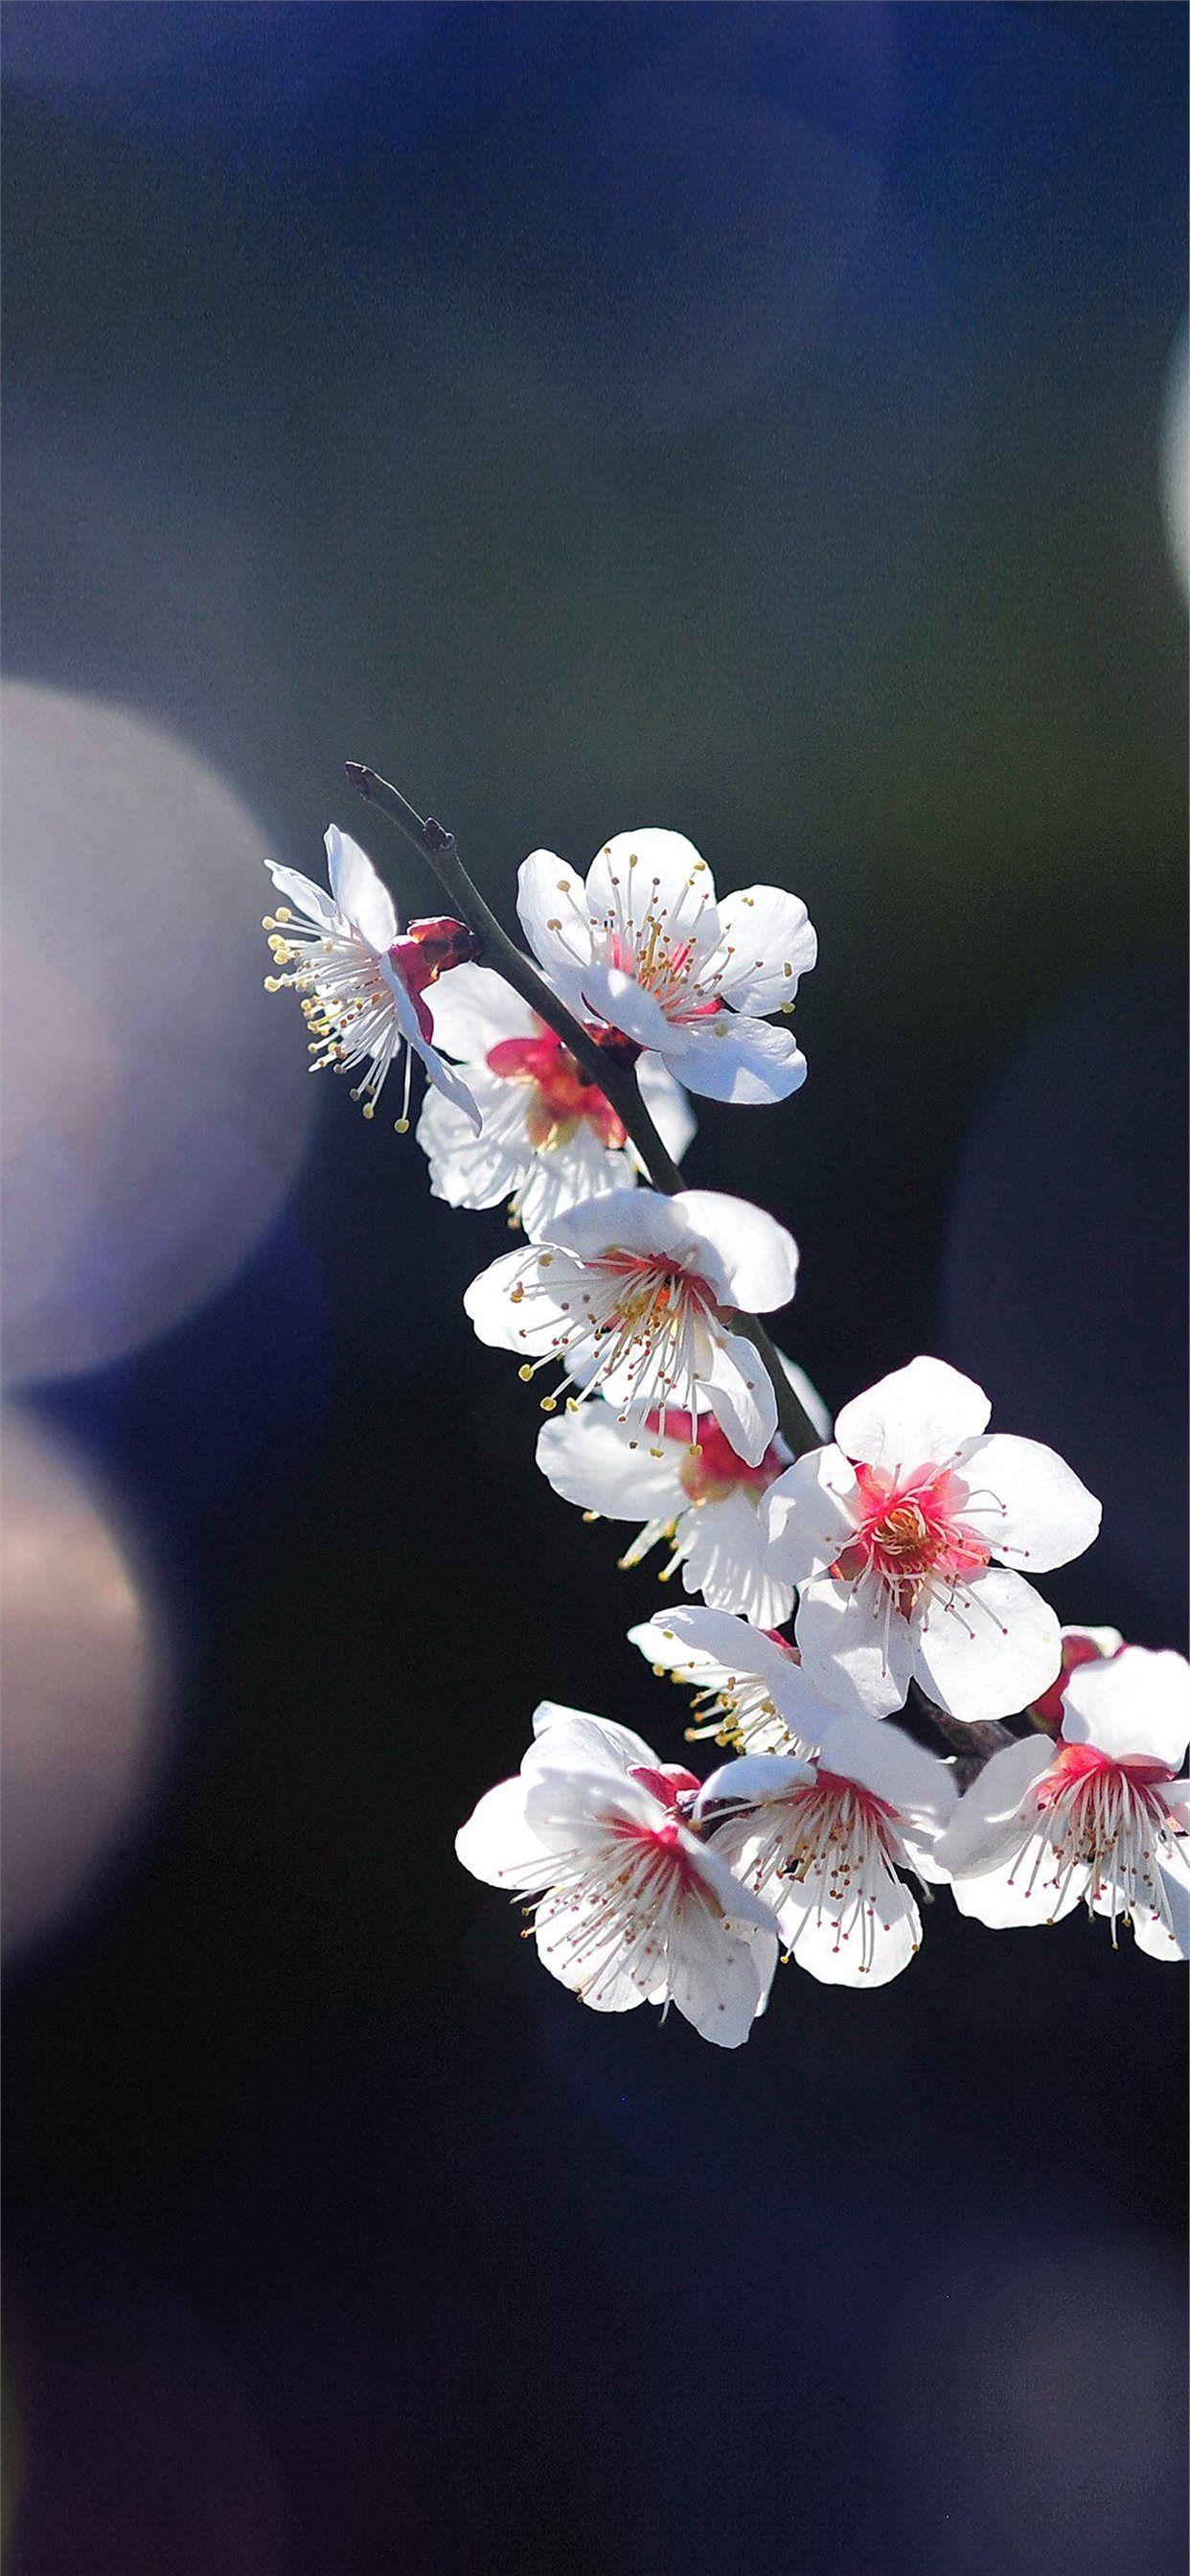 1242x2688 Apple mq24 mùa xuân hoa sakura cây thiên nhiên bùng phát.  iPhone X